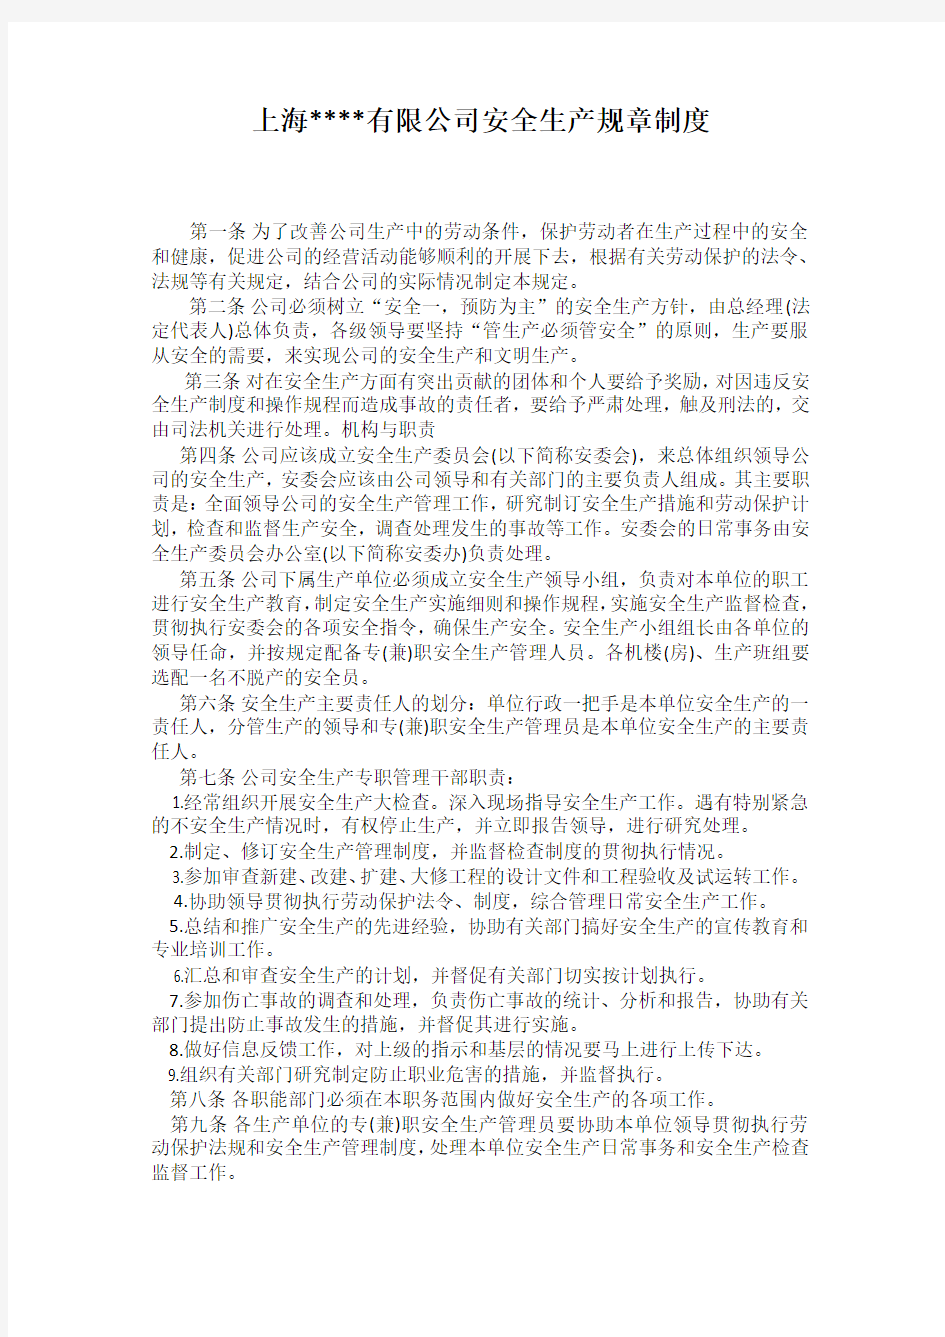 上海有限公司安全生产规章制度